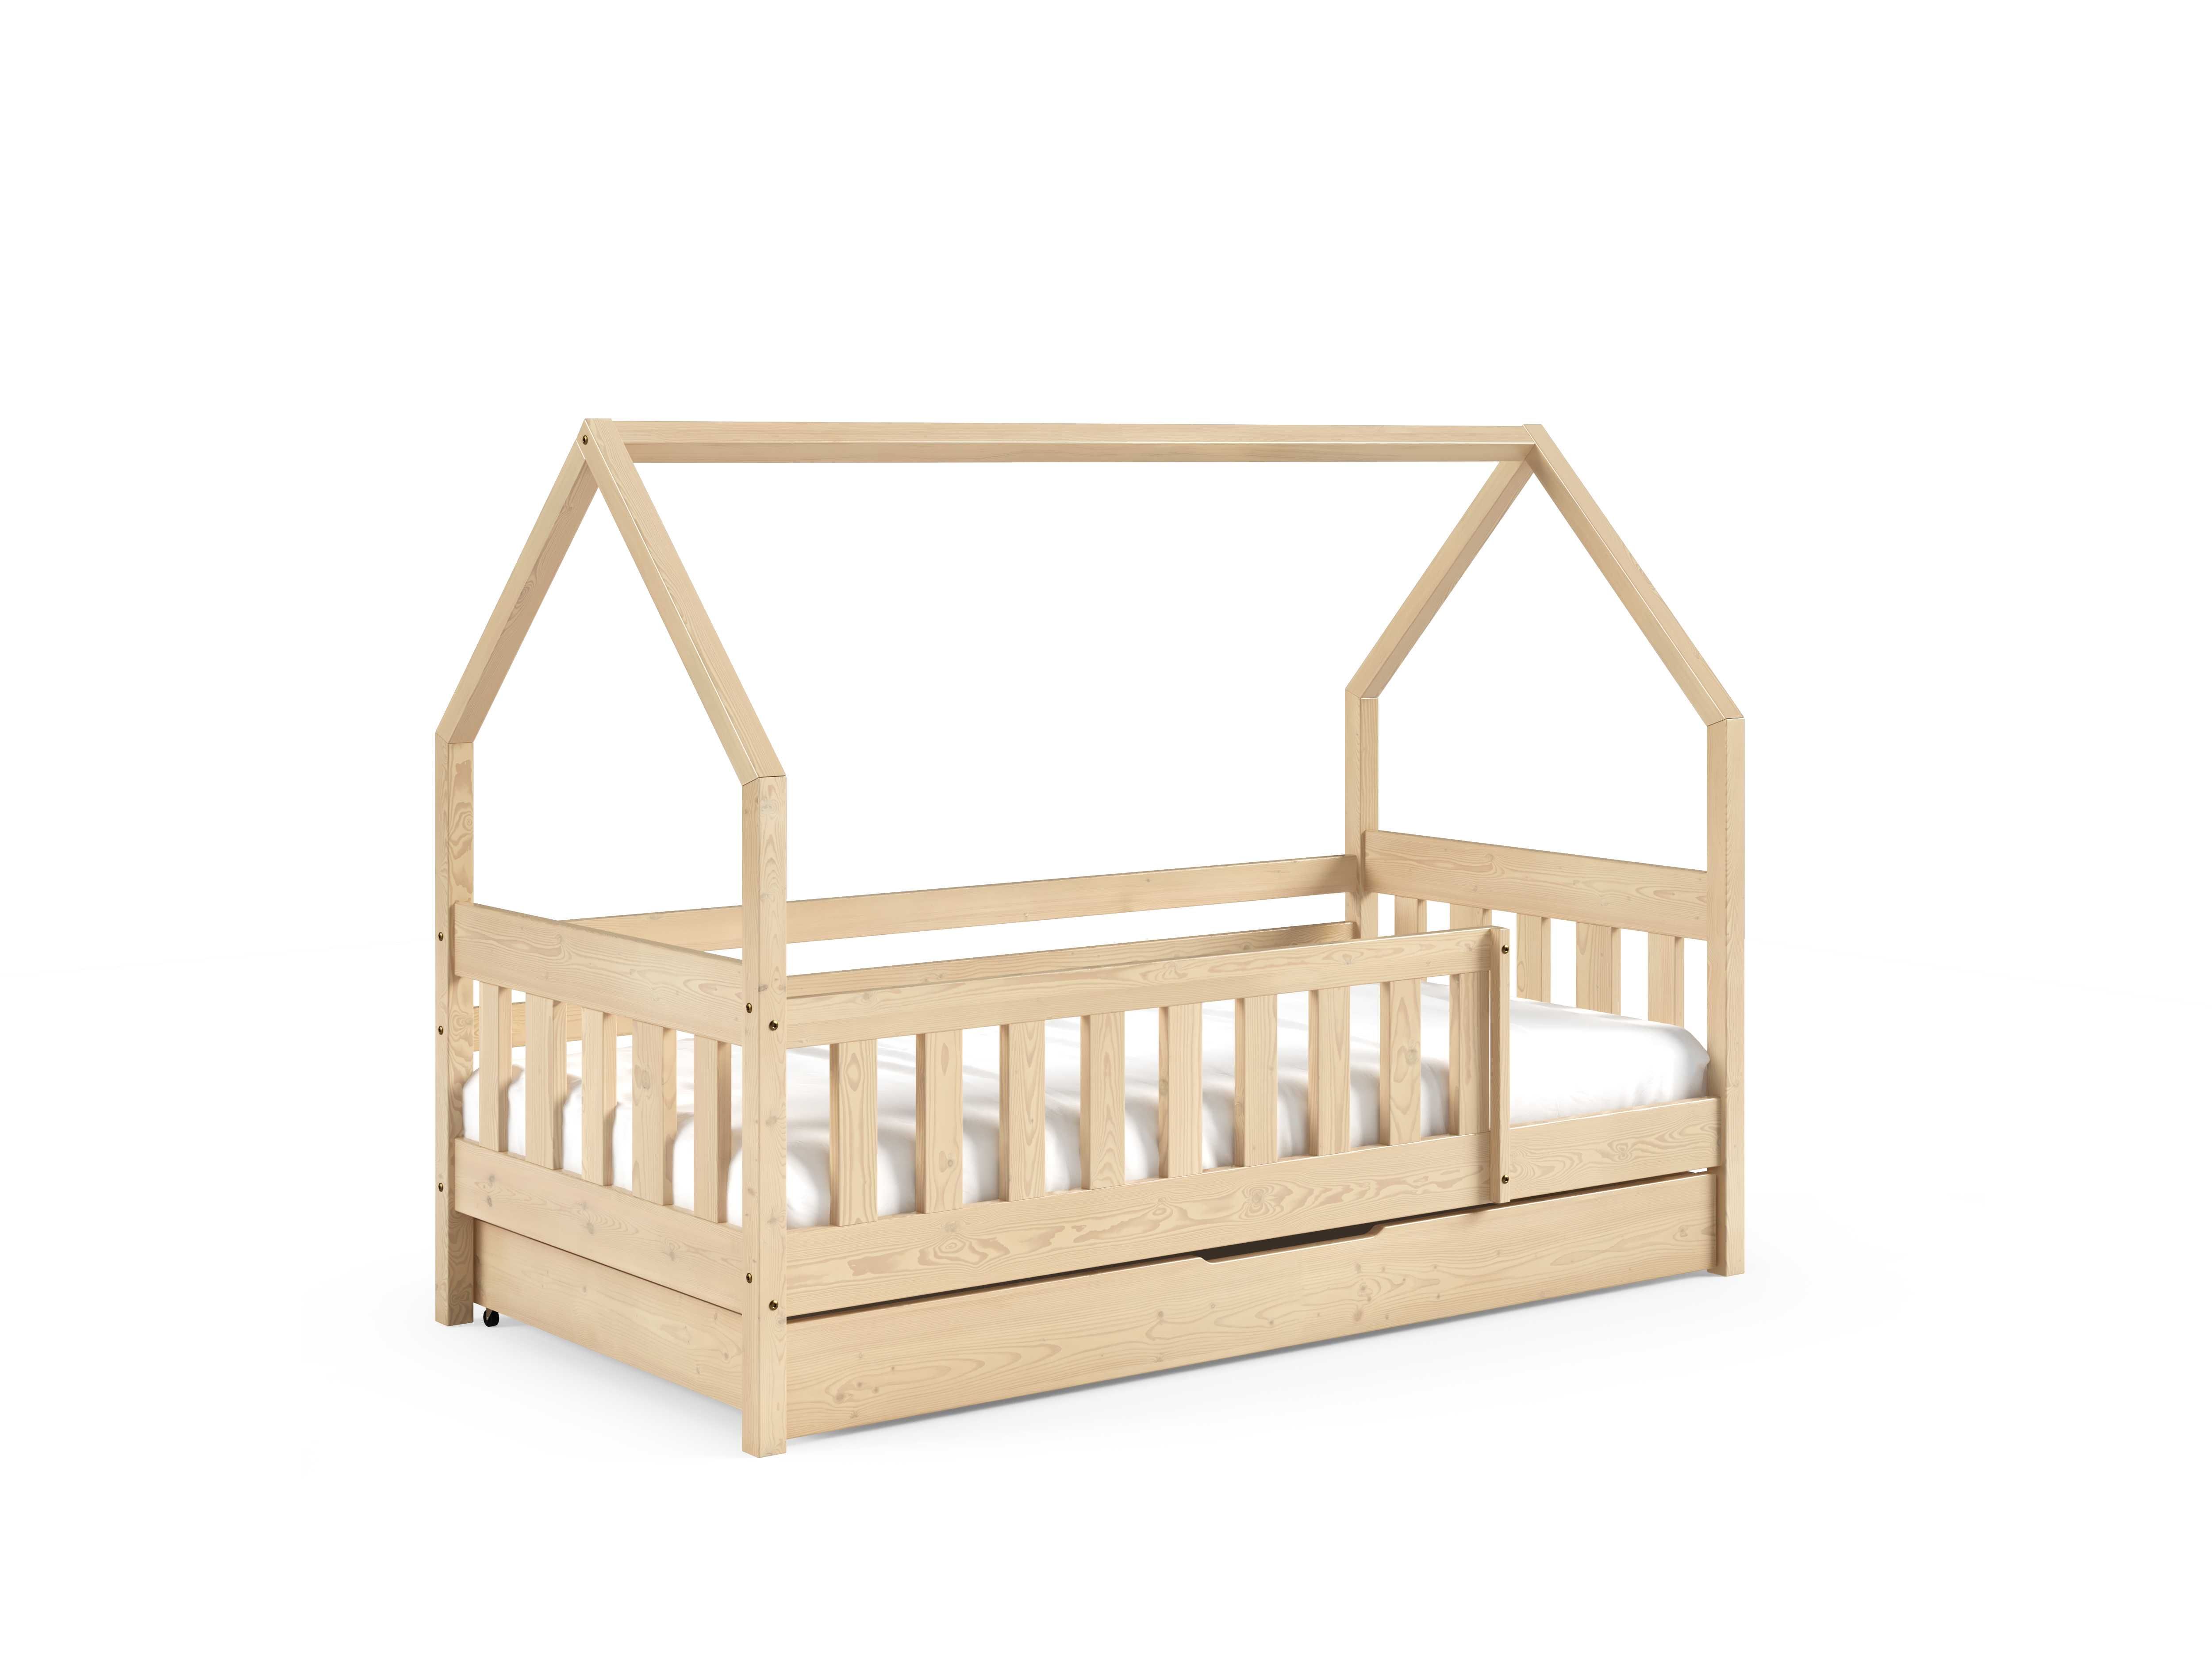 Luna - łóżko dziecięce - styl skandynawski - drewno